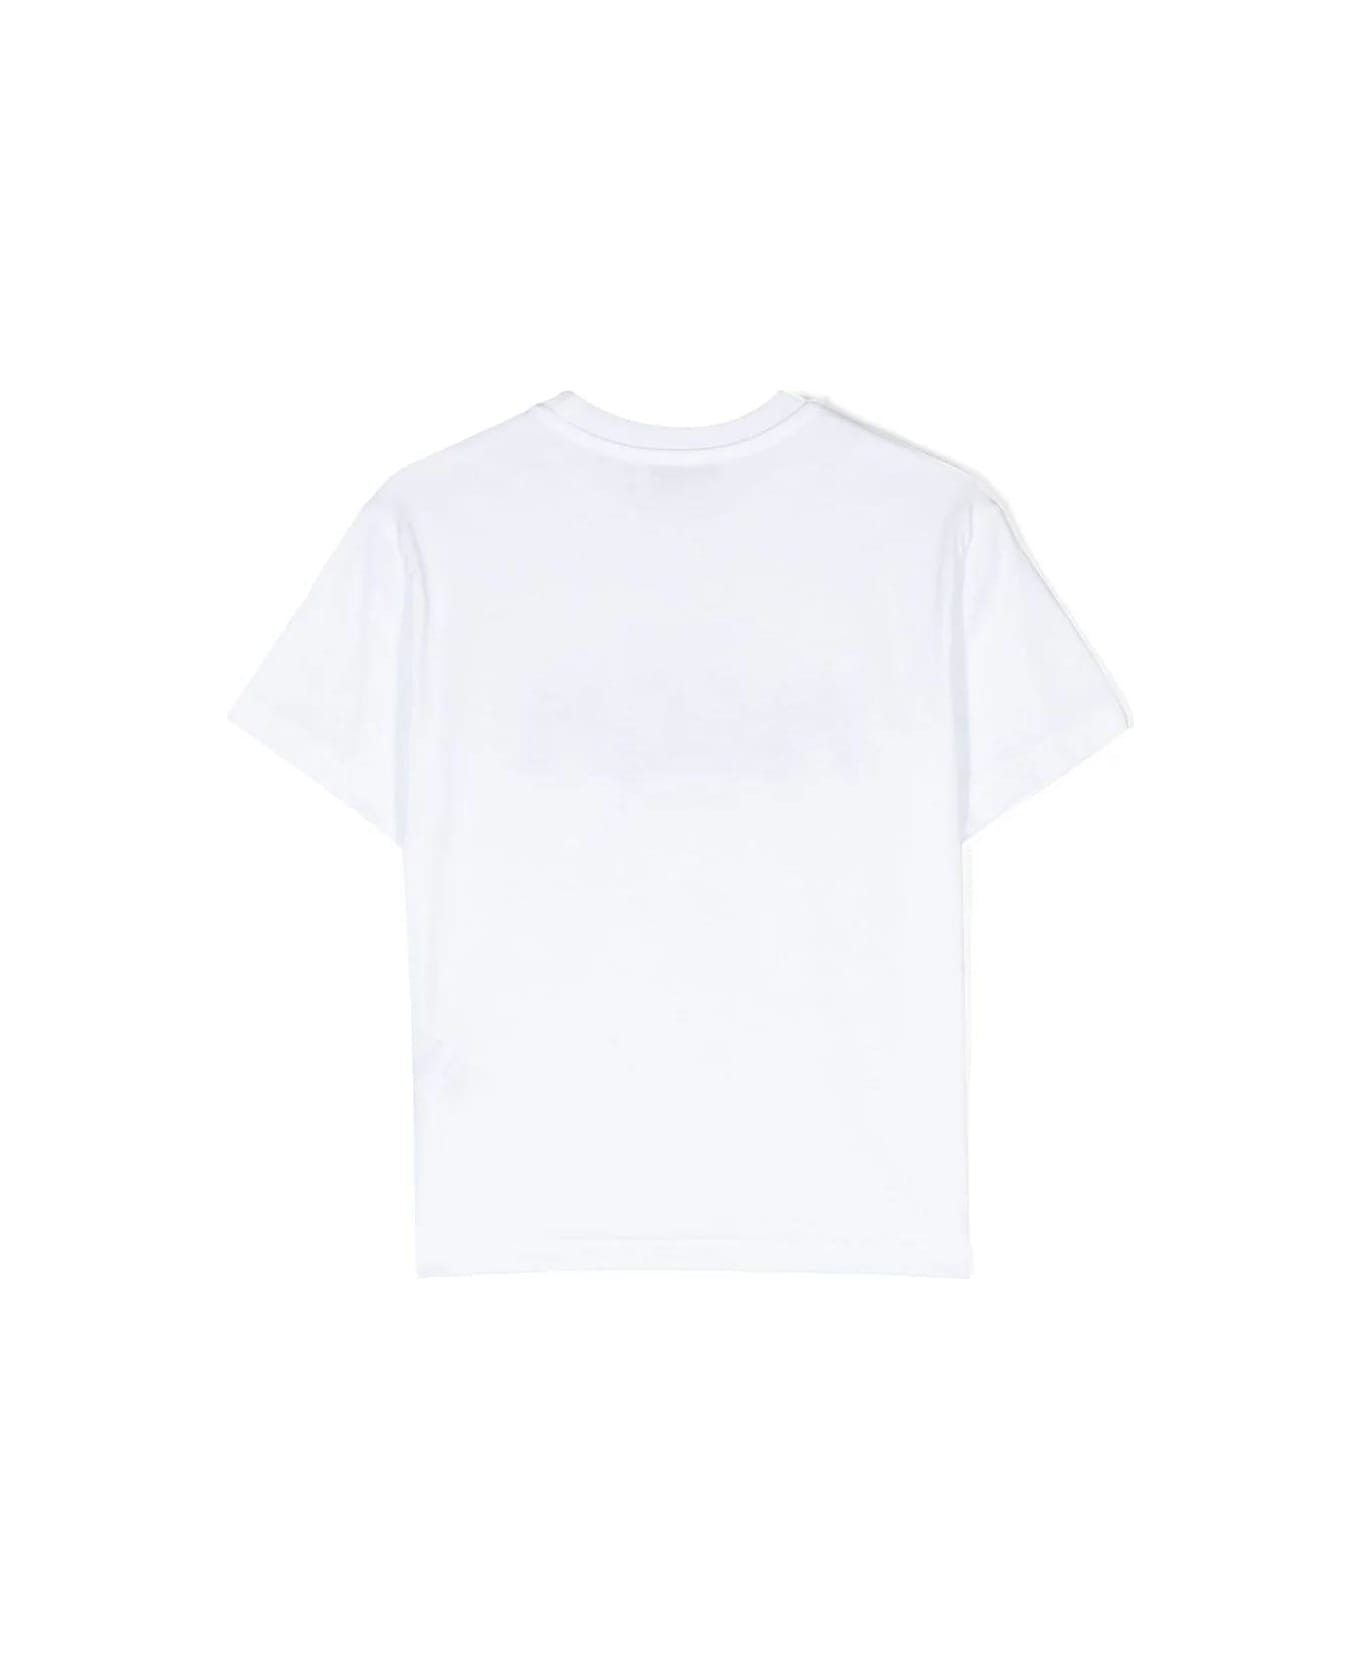 MSGM T-shirt Bianca In Jersey Di Cotone Bambino - Bianco